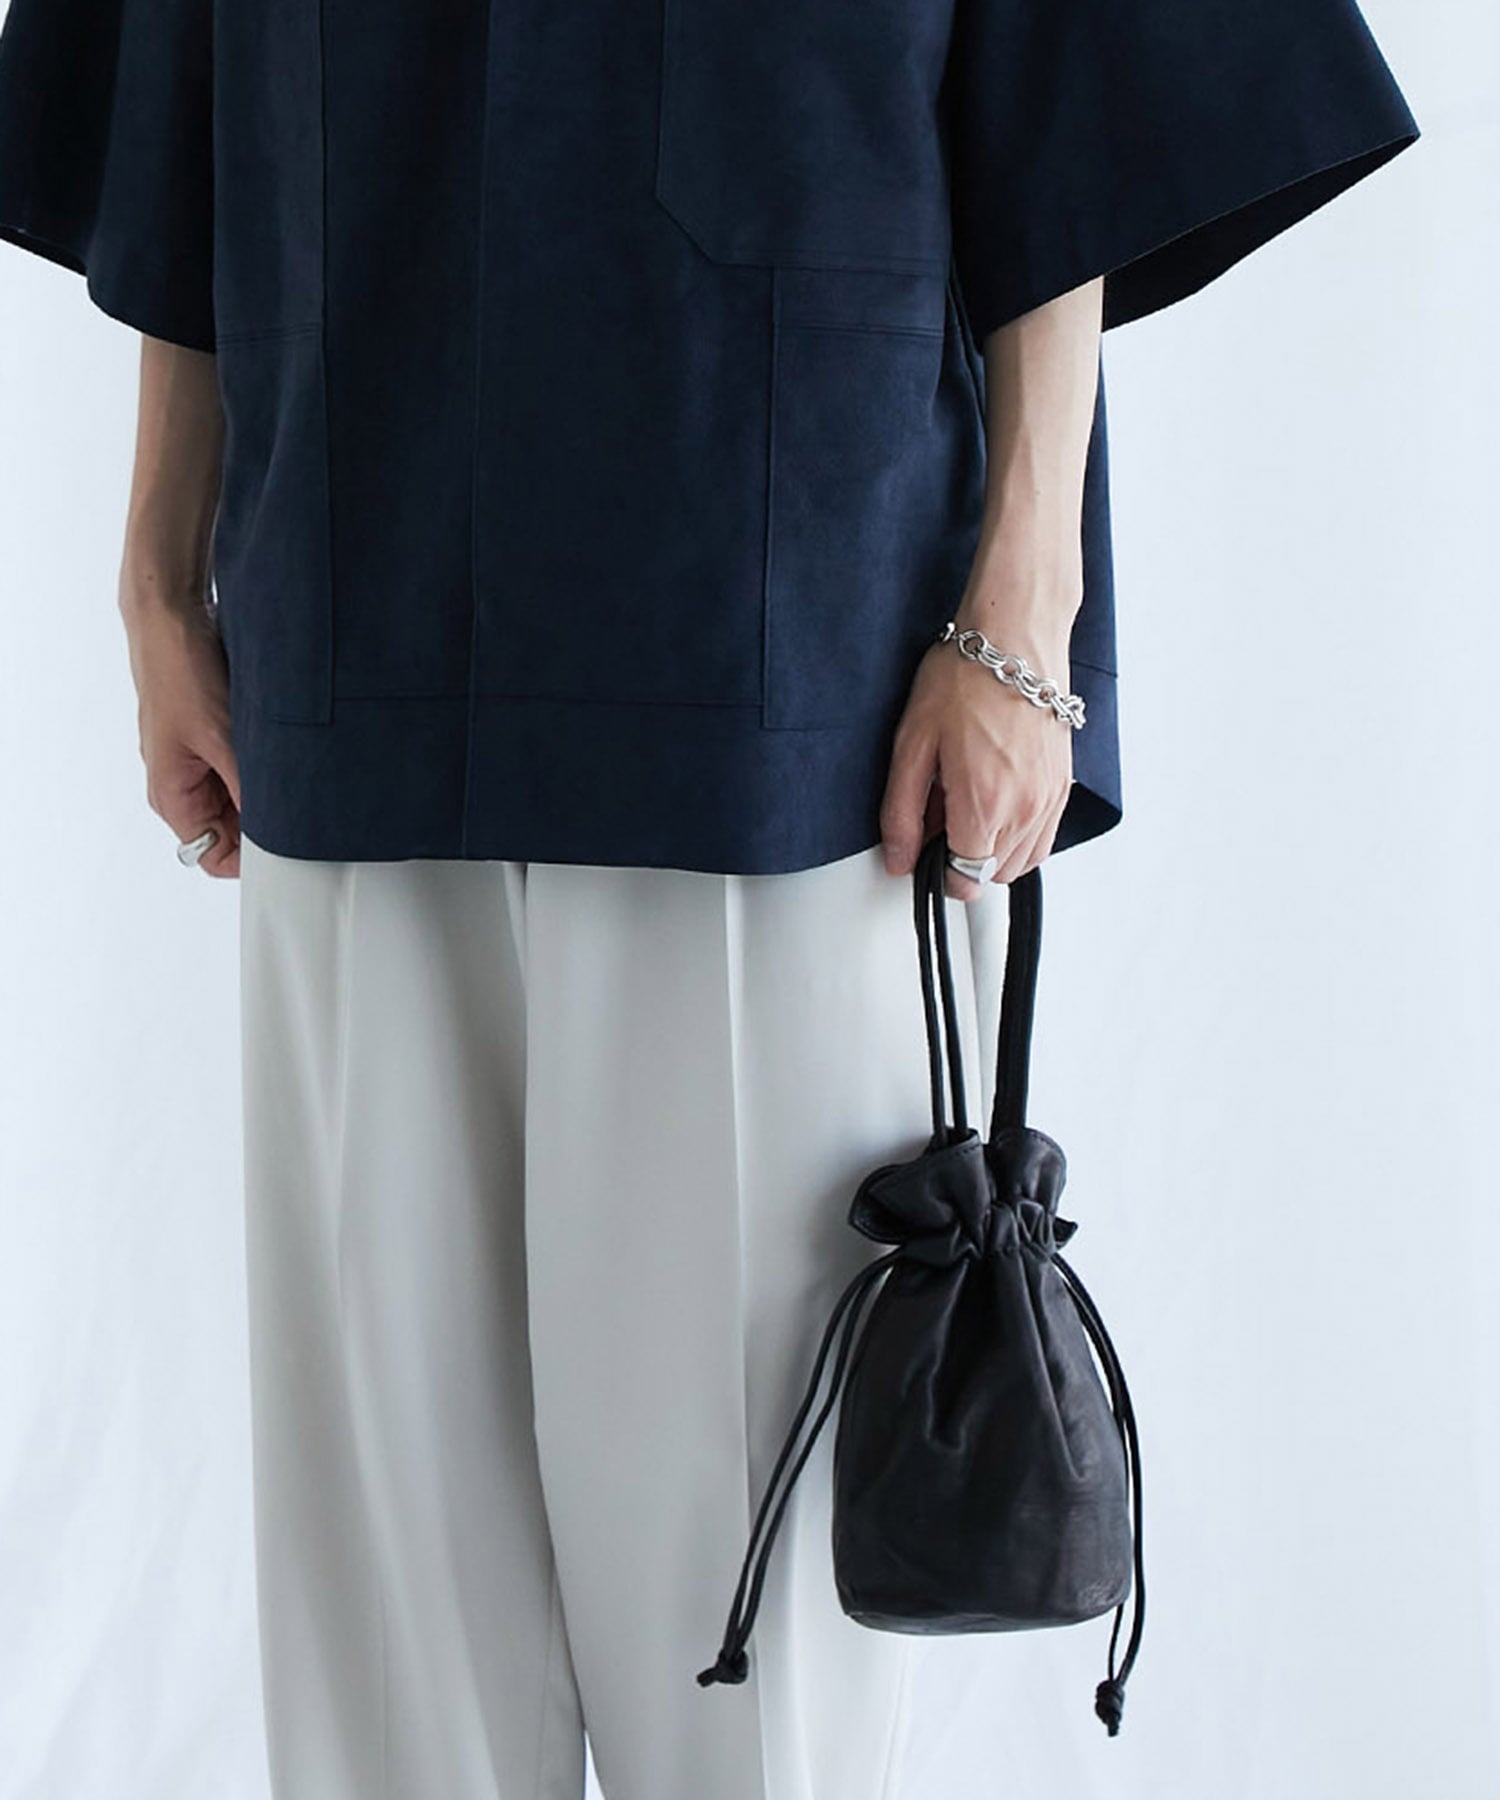 革製品 作家 Tokizaki さん 10角 BAG 巾着 バッグ - ショルダーバッグ